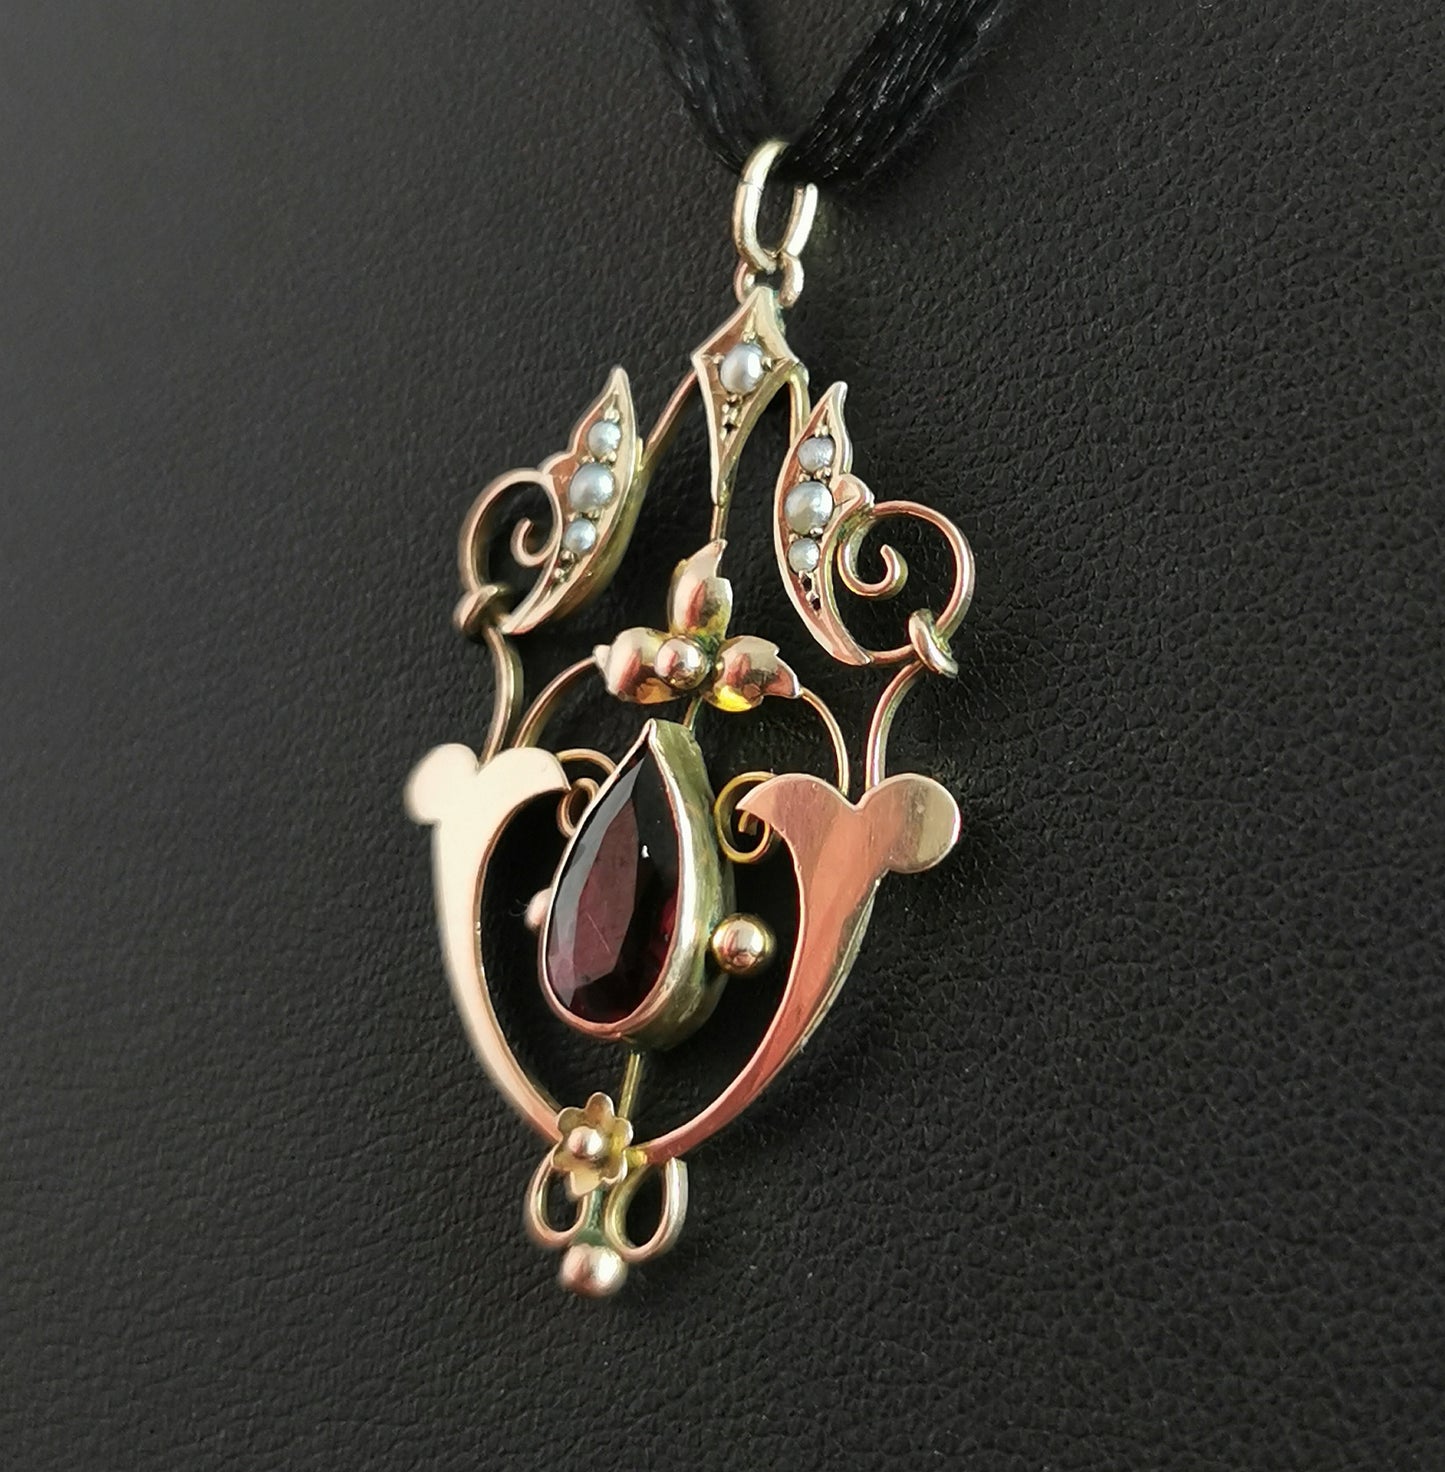 Antique Art Nouveau pendant, 9ct gold, garnet and pearl